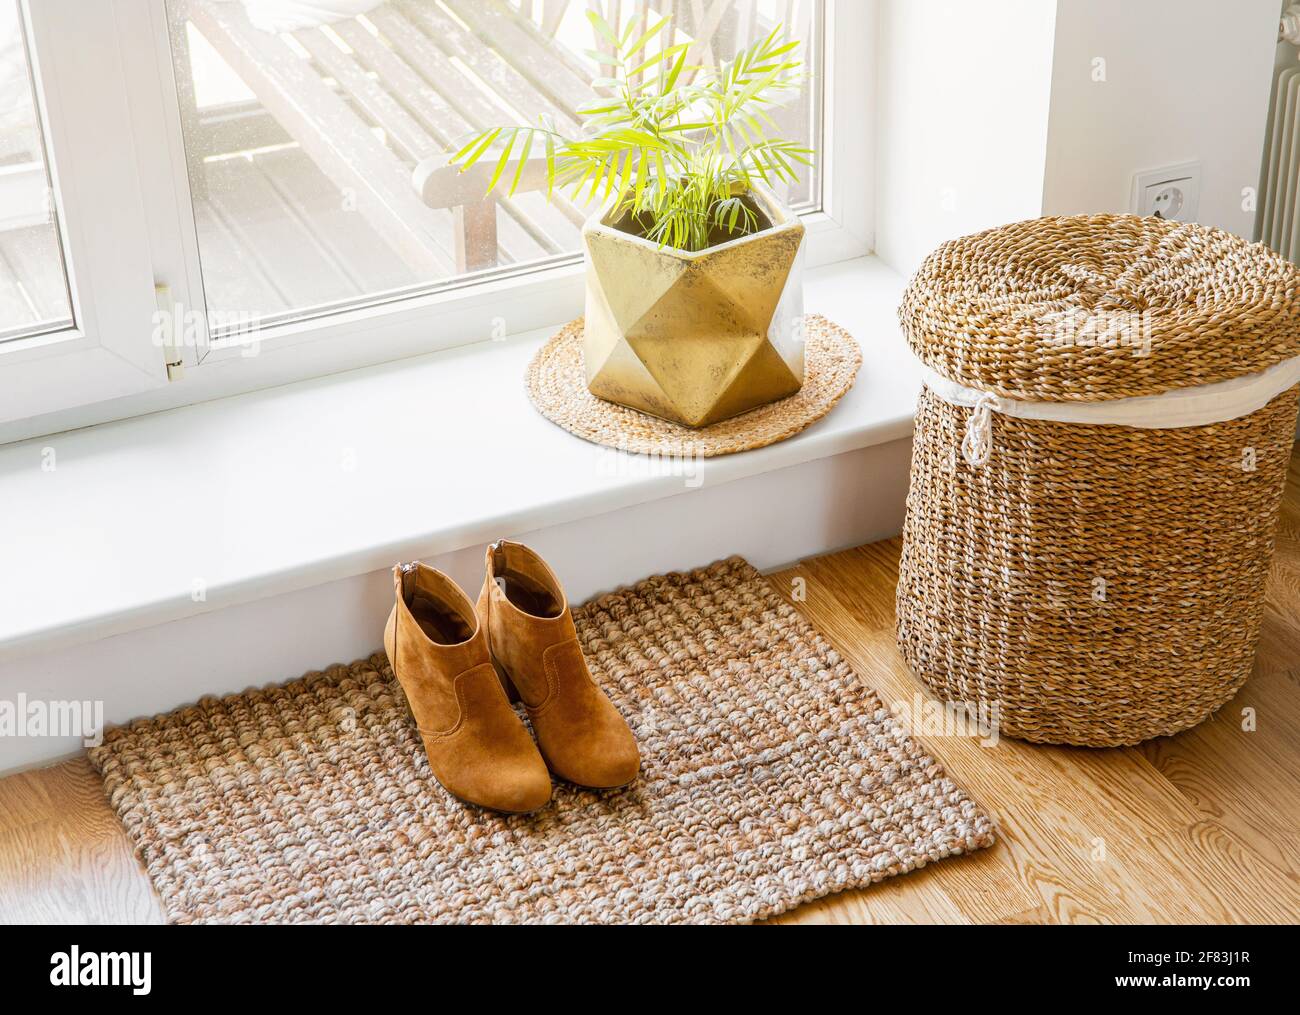 Hartholzboden mit Jute-Fußmatte, Schuhen und Blumentopf und Seegraswaschkorb am Fenster. Natürliche materielle Objekte im Heimkonzept. Inneneinrichtung. Stockfoto